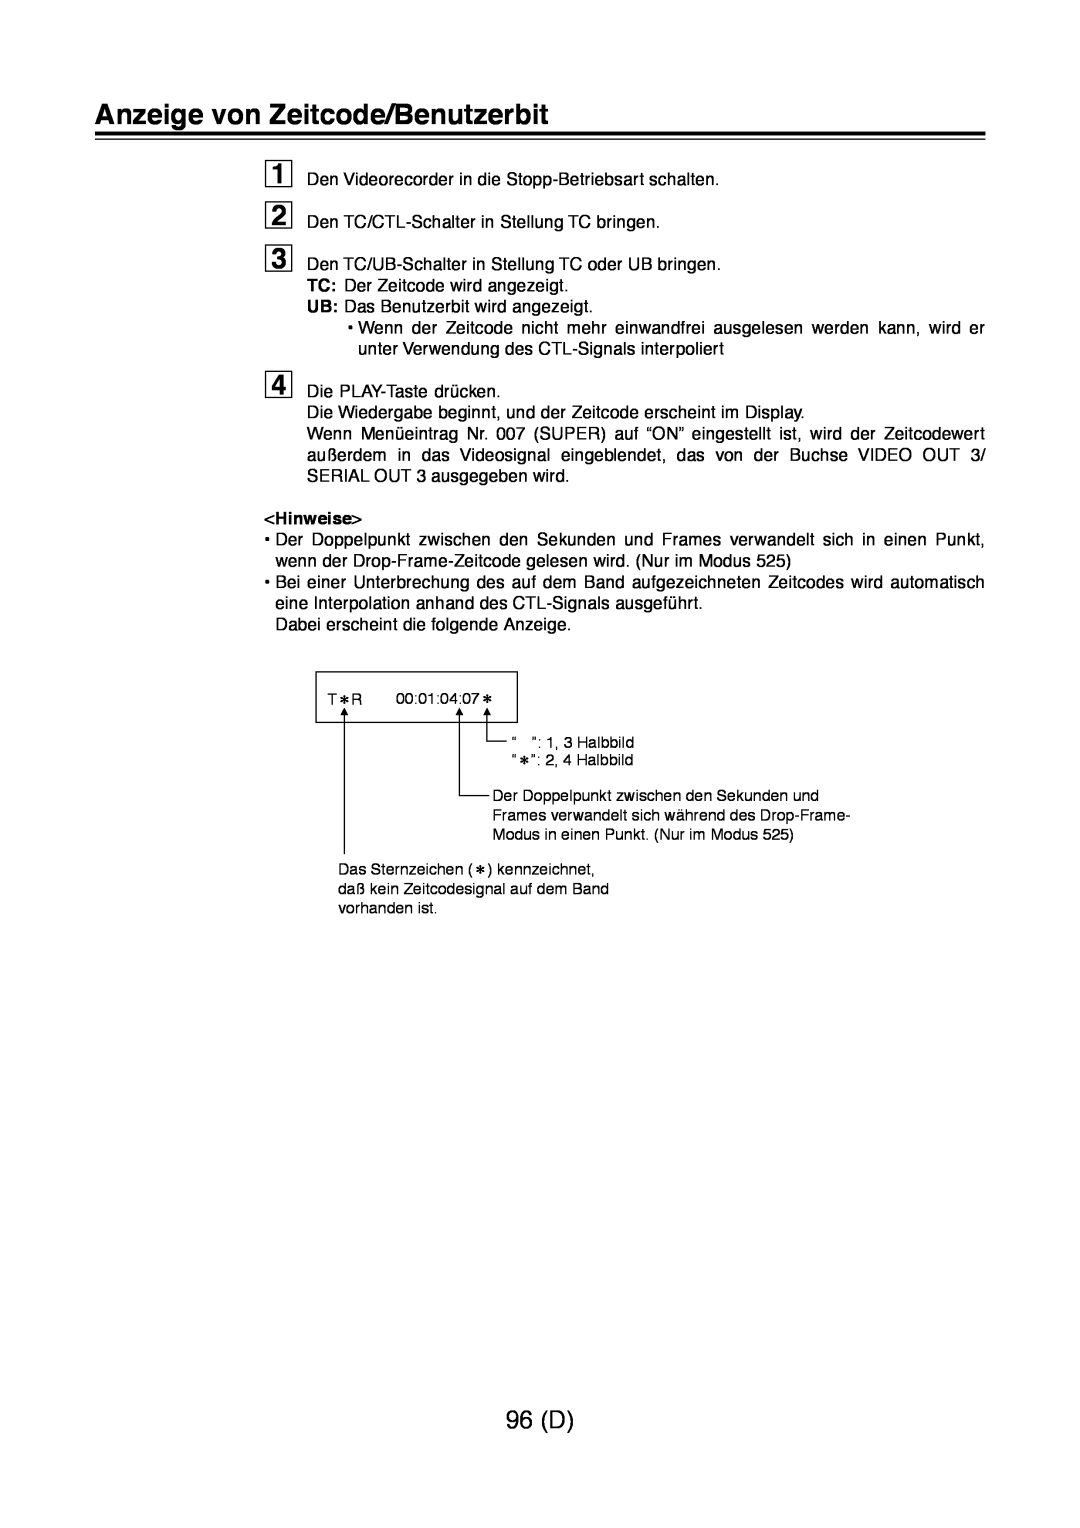 Panasonic AJ-D960 operating instructions Anzeige von Zeitcode/Benutzerbit, 96 D, Hinweise 